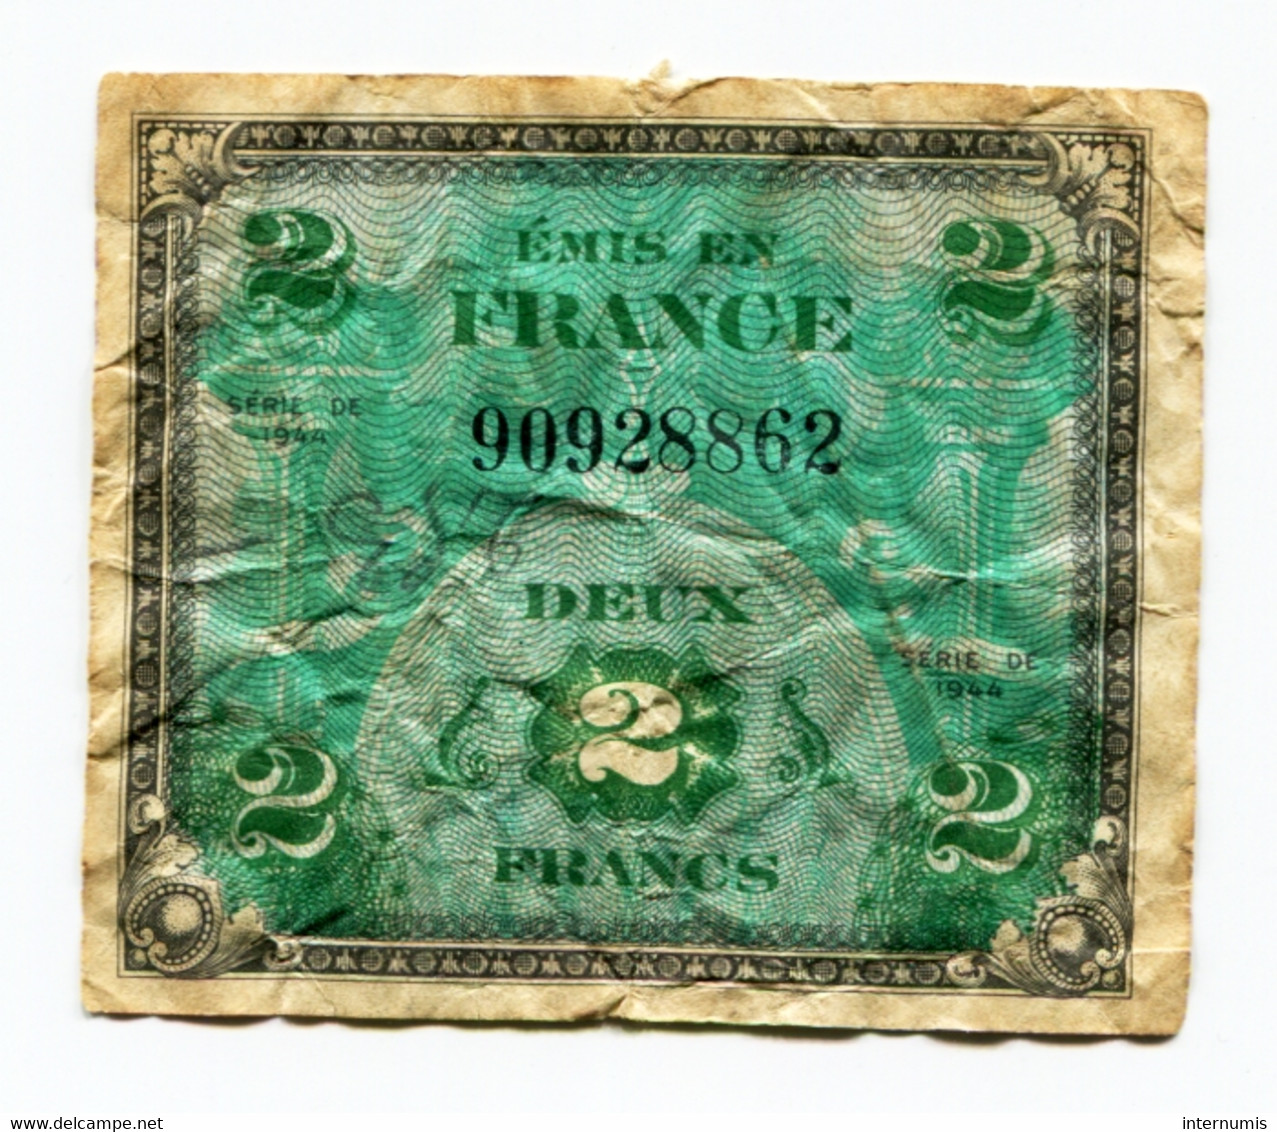 France, 2 Francs, DRAPEAU Sans Série, TYPE DE 1944, N° : 90928862, B (VG), VF.16.01 - 1944 Flagge/Frankreich